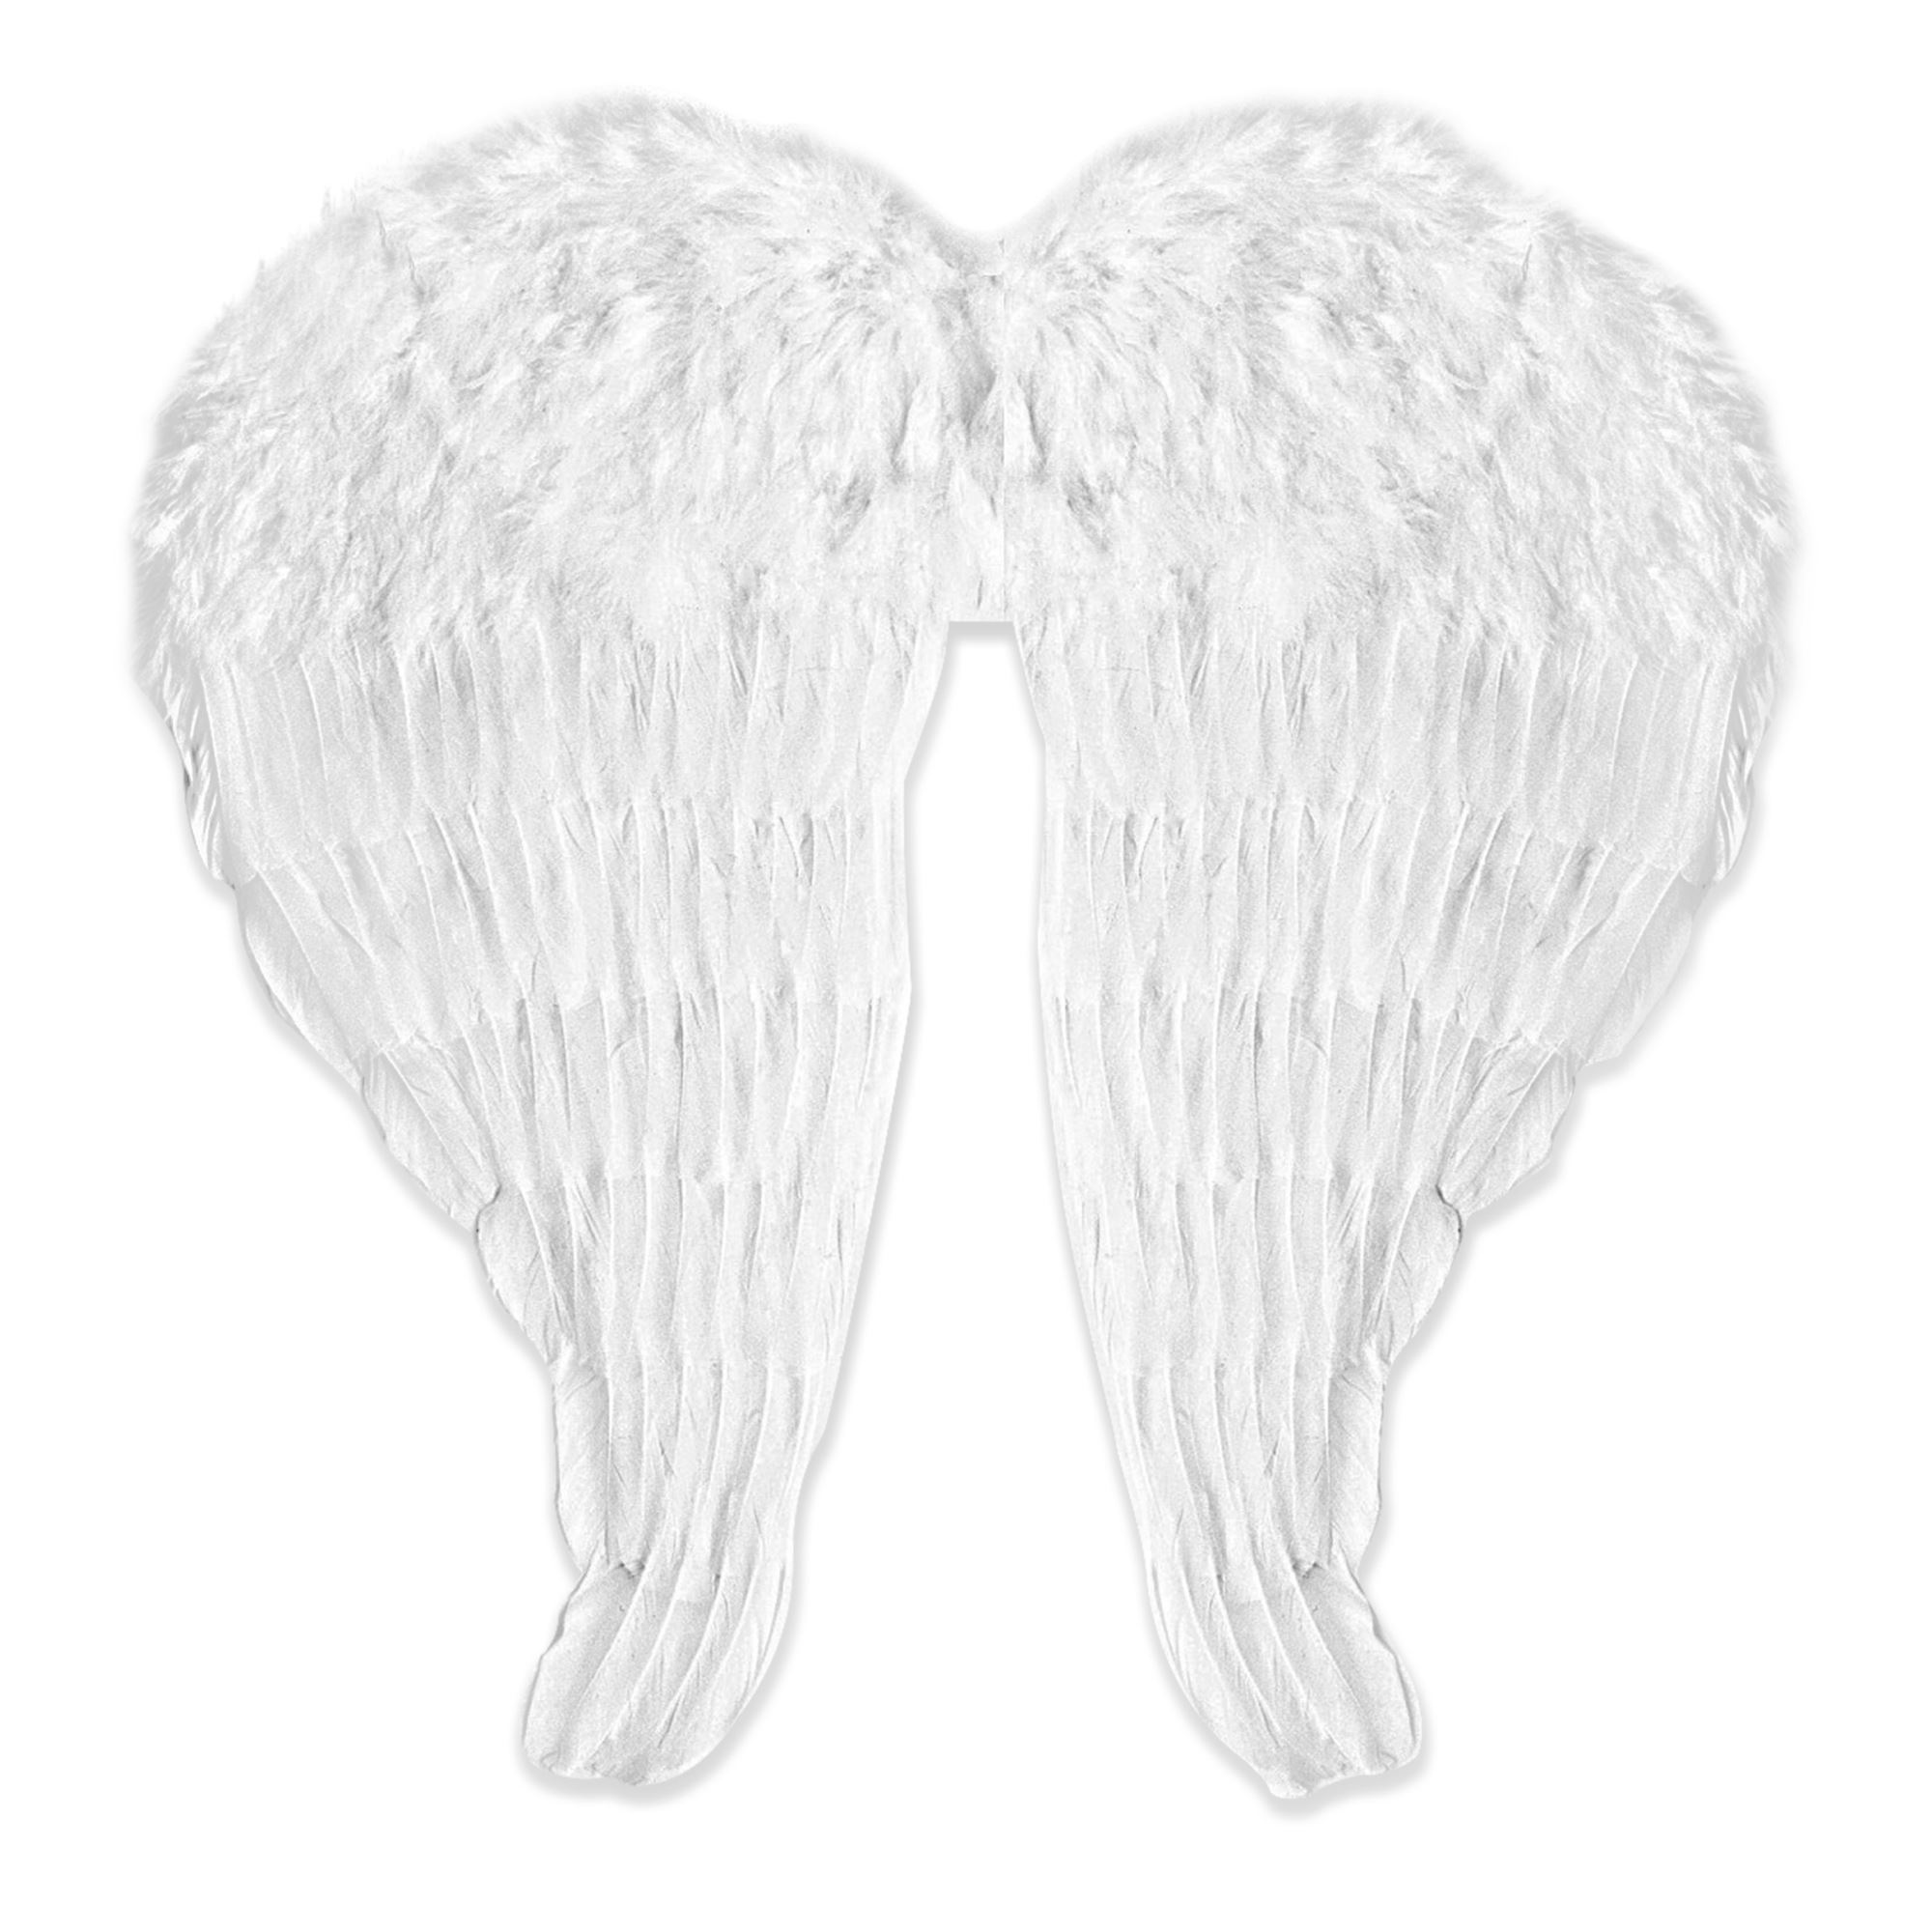 Vleugels van engel gemaakt van witte veren